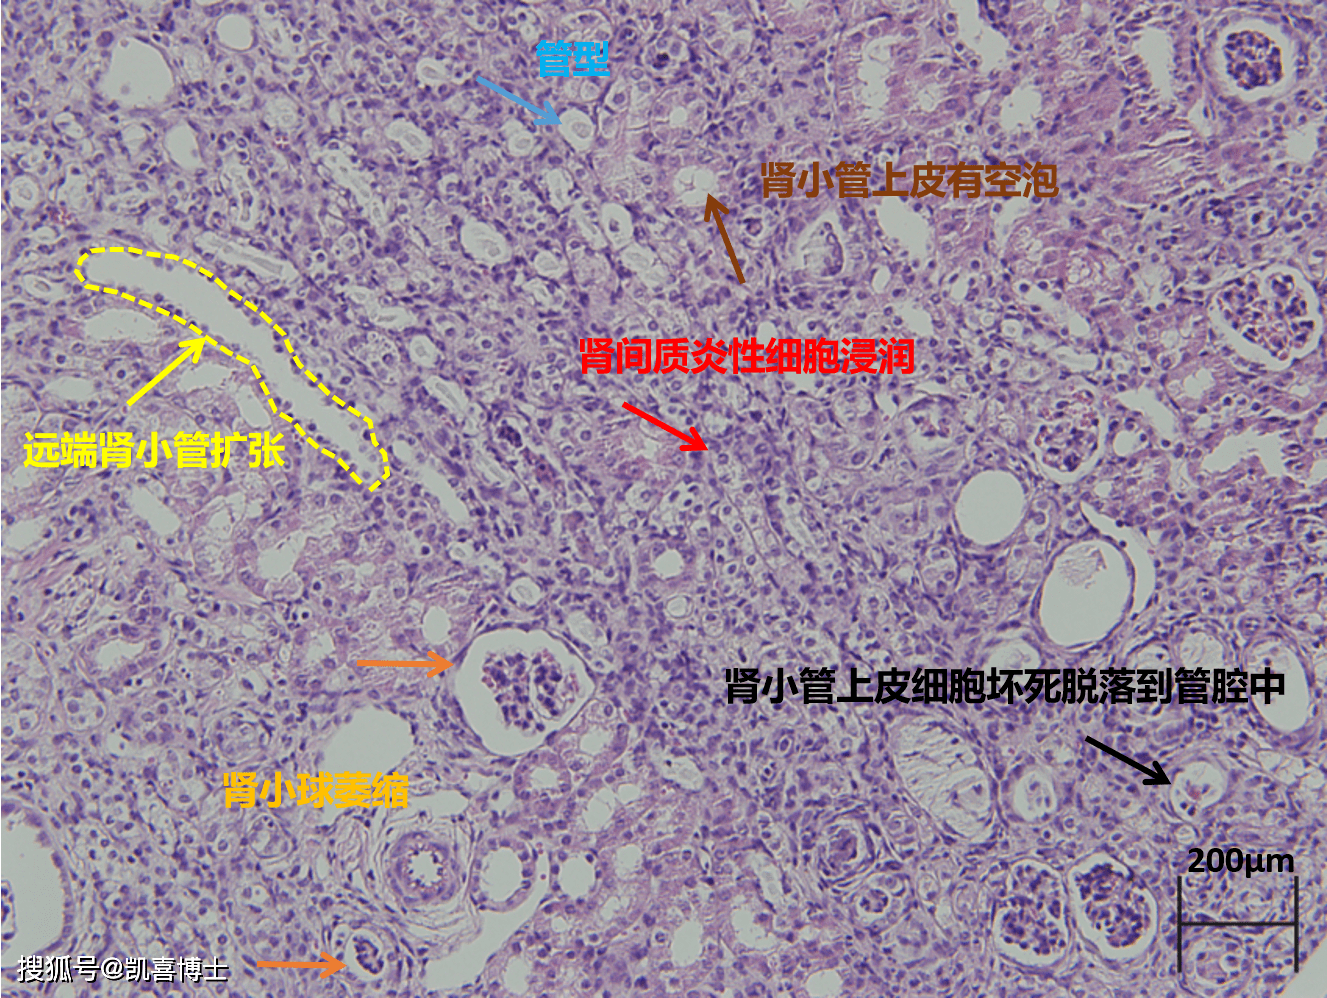 部分肾脏在切片中显示:肾间质炎性细胞浸润,肾小球萎缩,远端肾小管